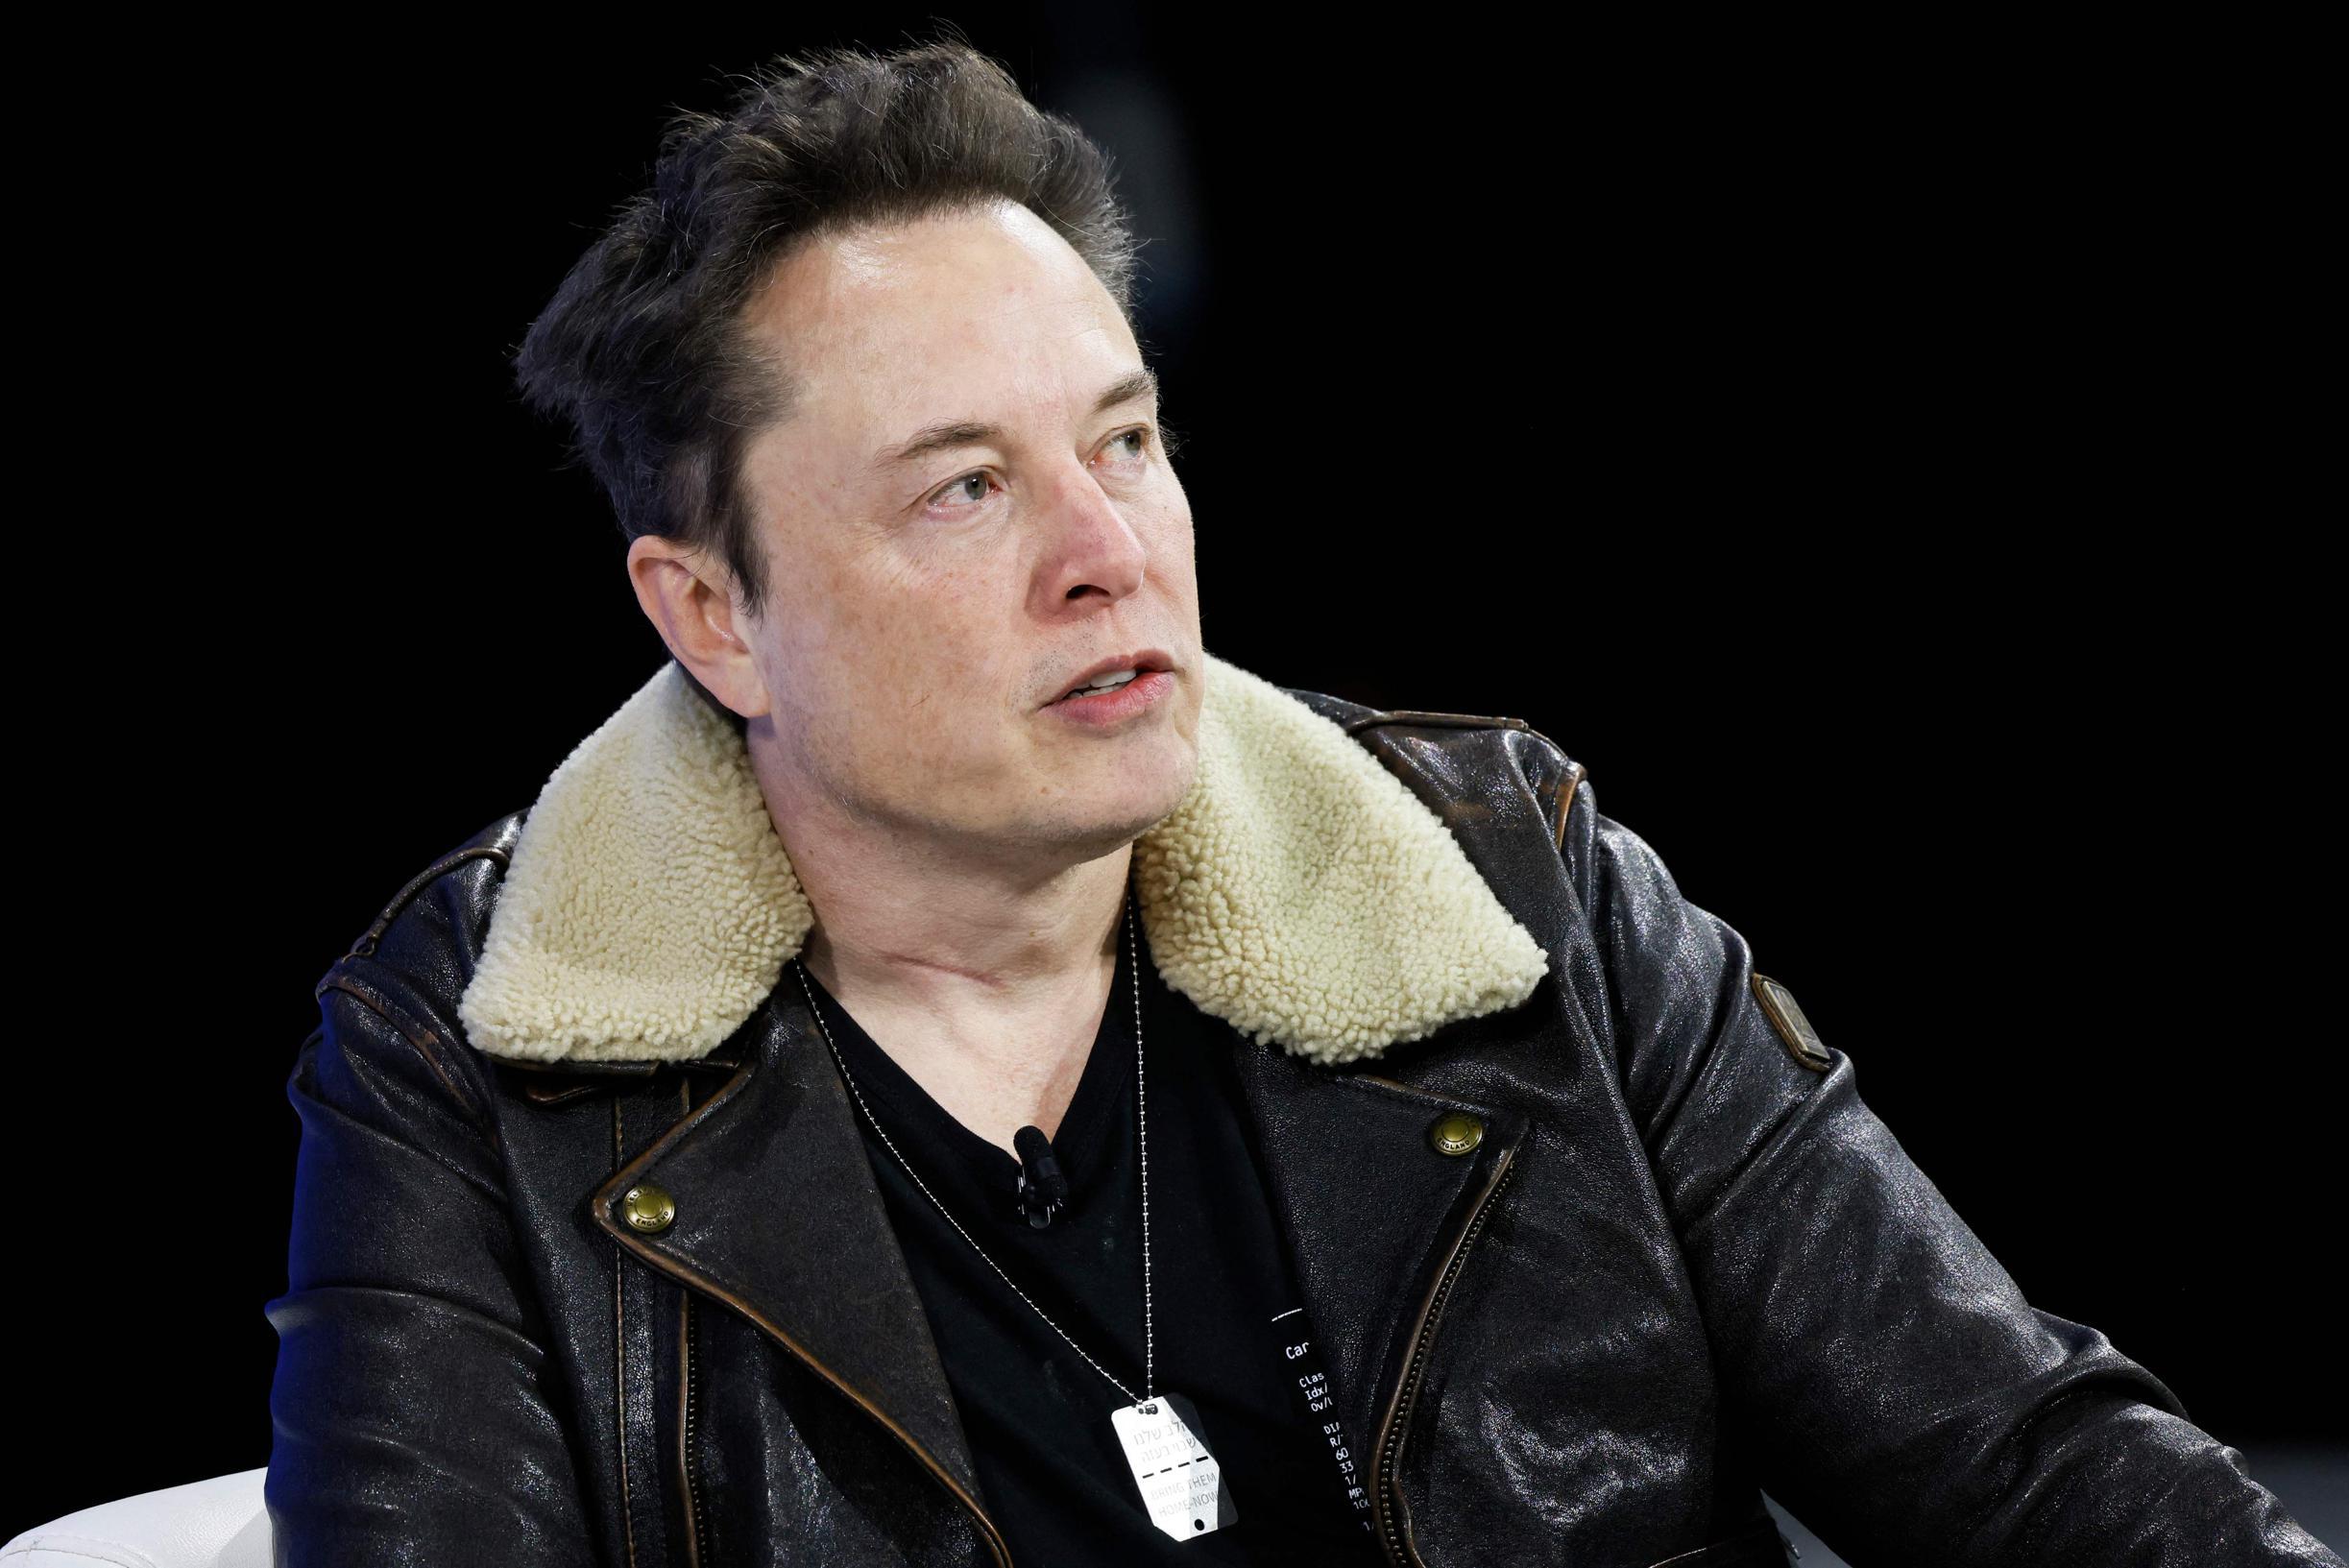 Elon Musk, reklamverenlere öfkeli yanıt verdi: “Bana şantaj yapmaya kalkarsanız cehenneme gidin”